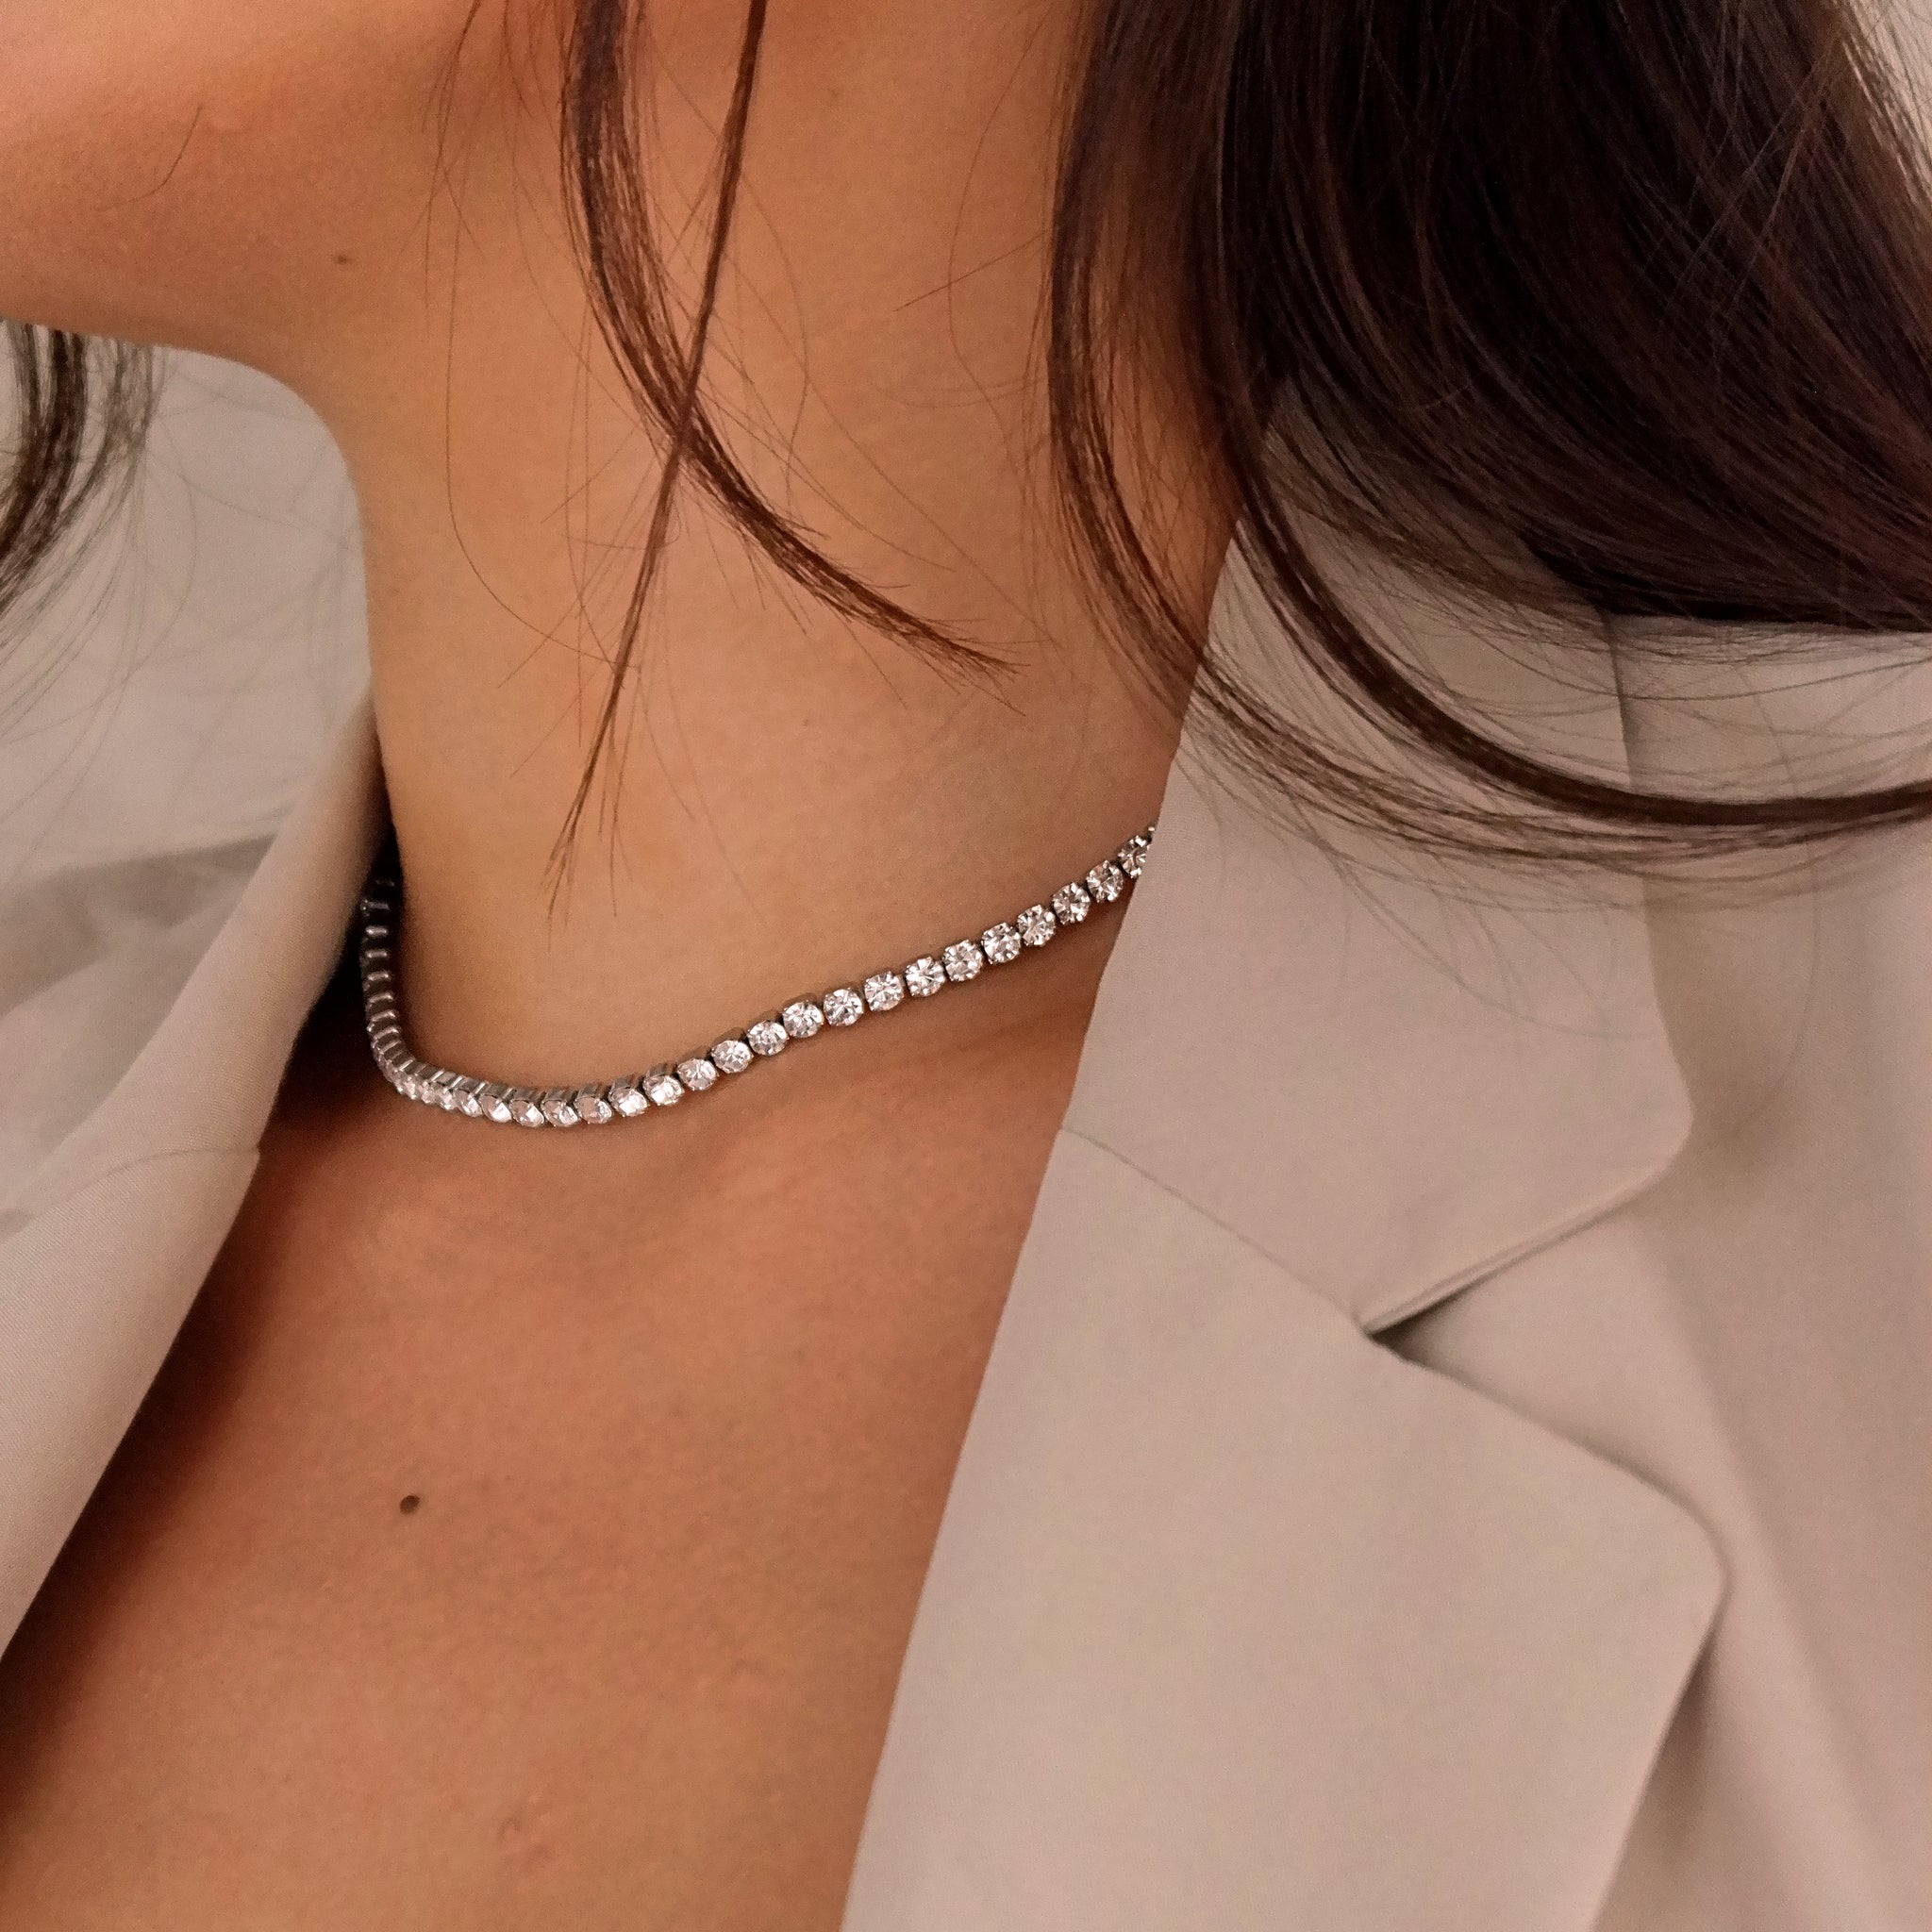 Large Diamond Multi-Row Tennis Necklace - Nuha Jewelers